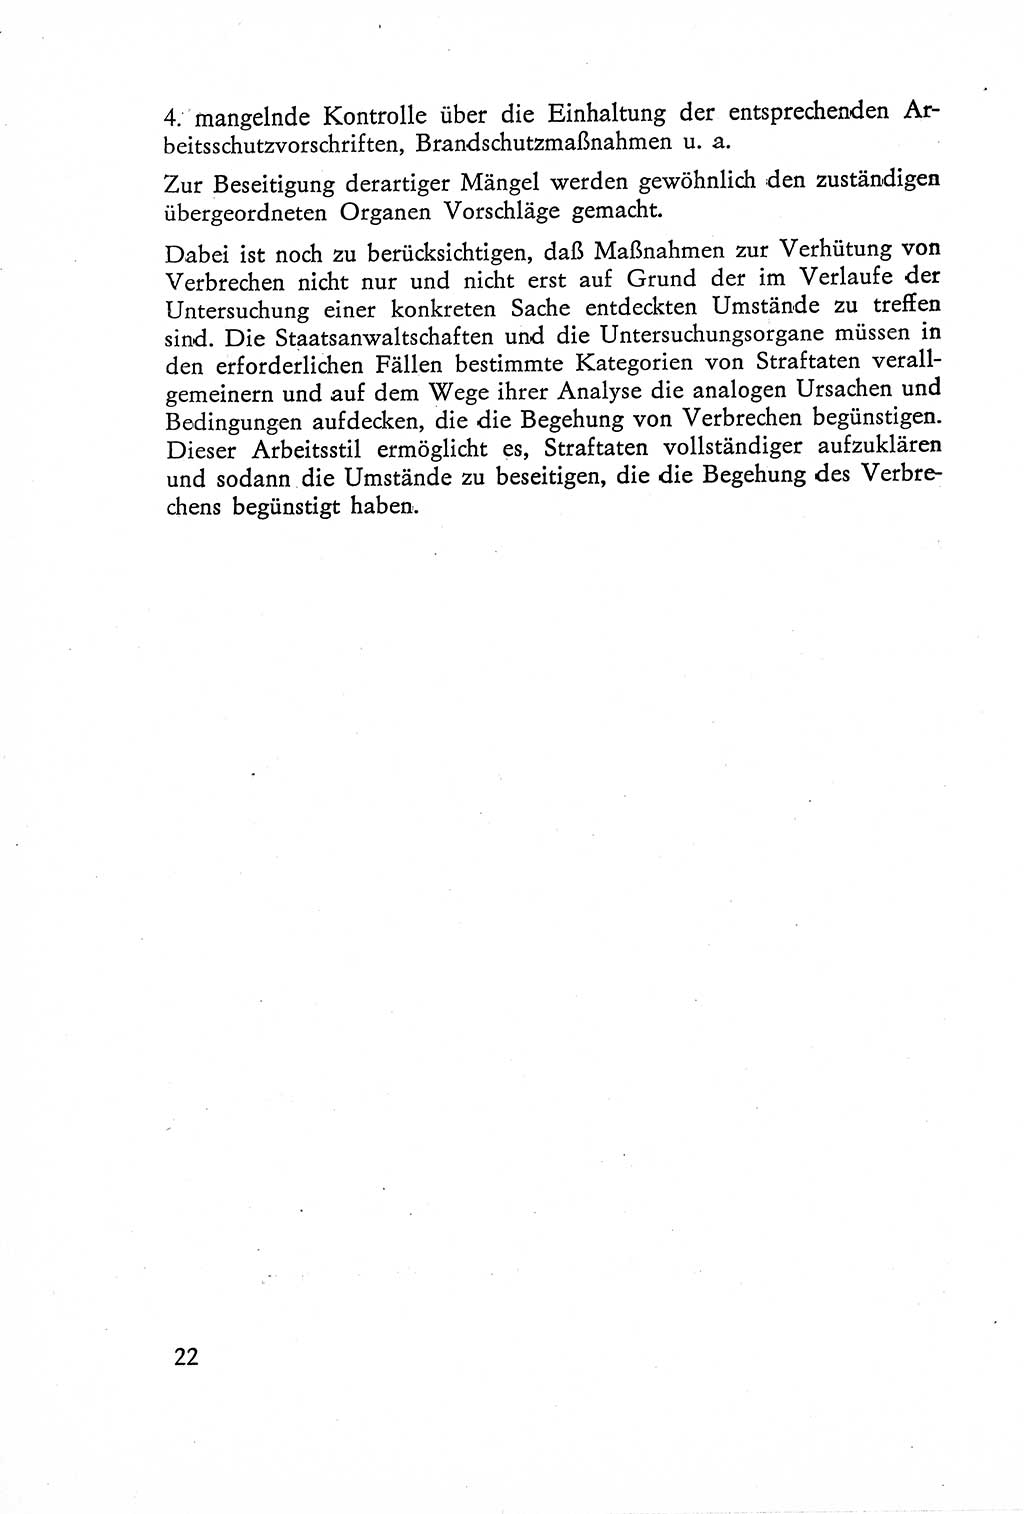 Die Untersuchung einzelner Verbrechensarten [Deutsche Demokratische Republik (DDR)] 1960, Seite 22 (Unters. Verbr.-Art. DDR 1960, S. 22)